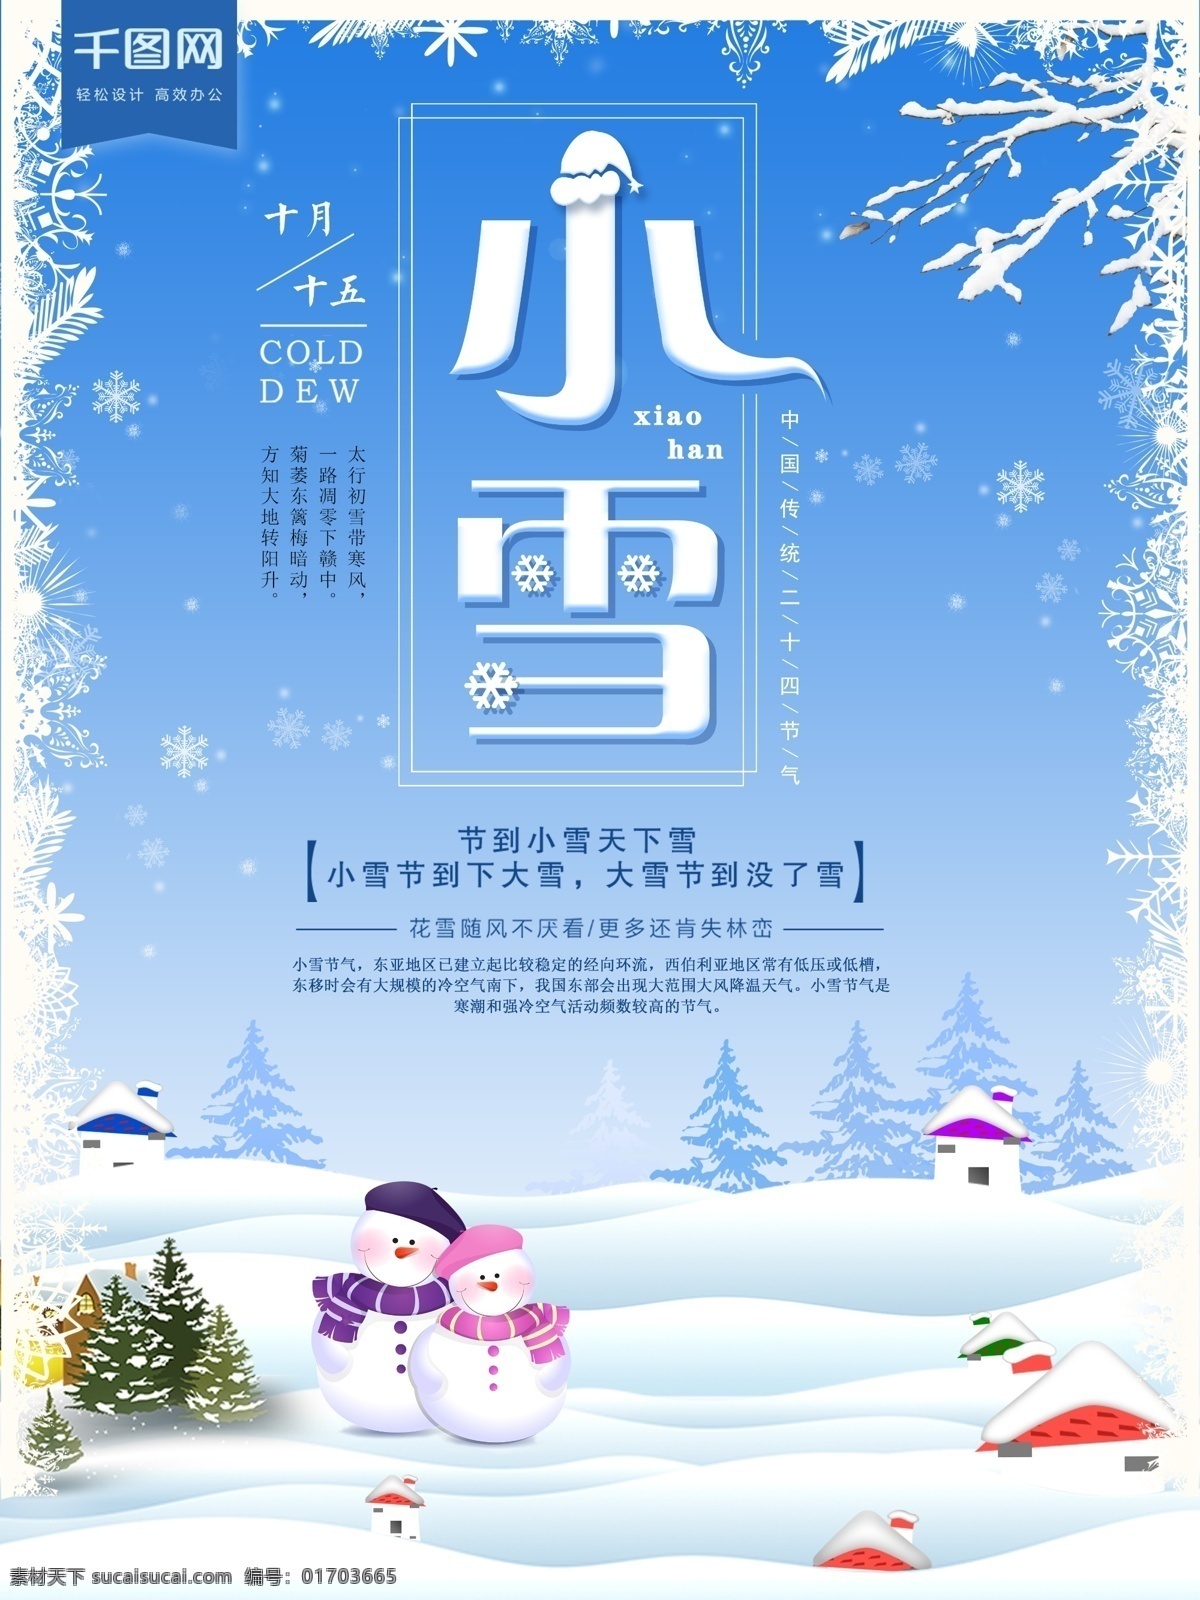 原创 中国 传统 二十四节气 小雪 海报 手绘场景 传统节气 寒冷